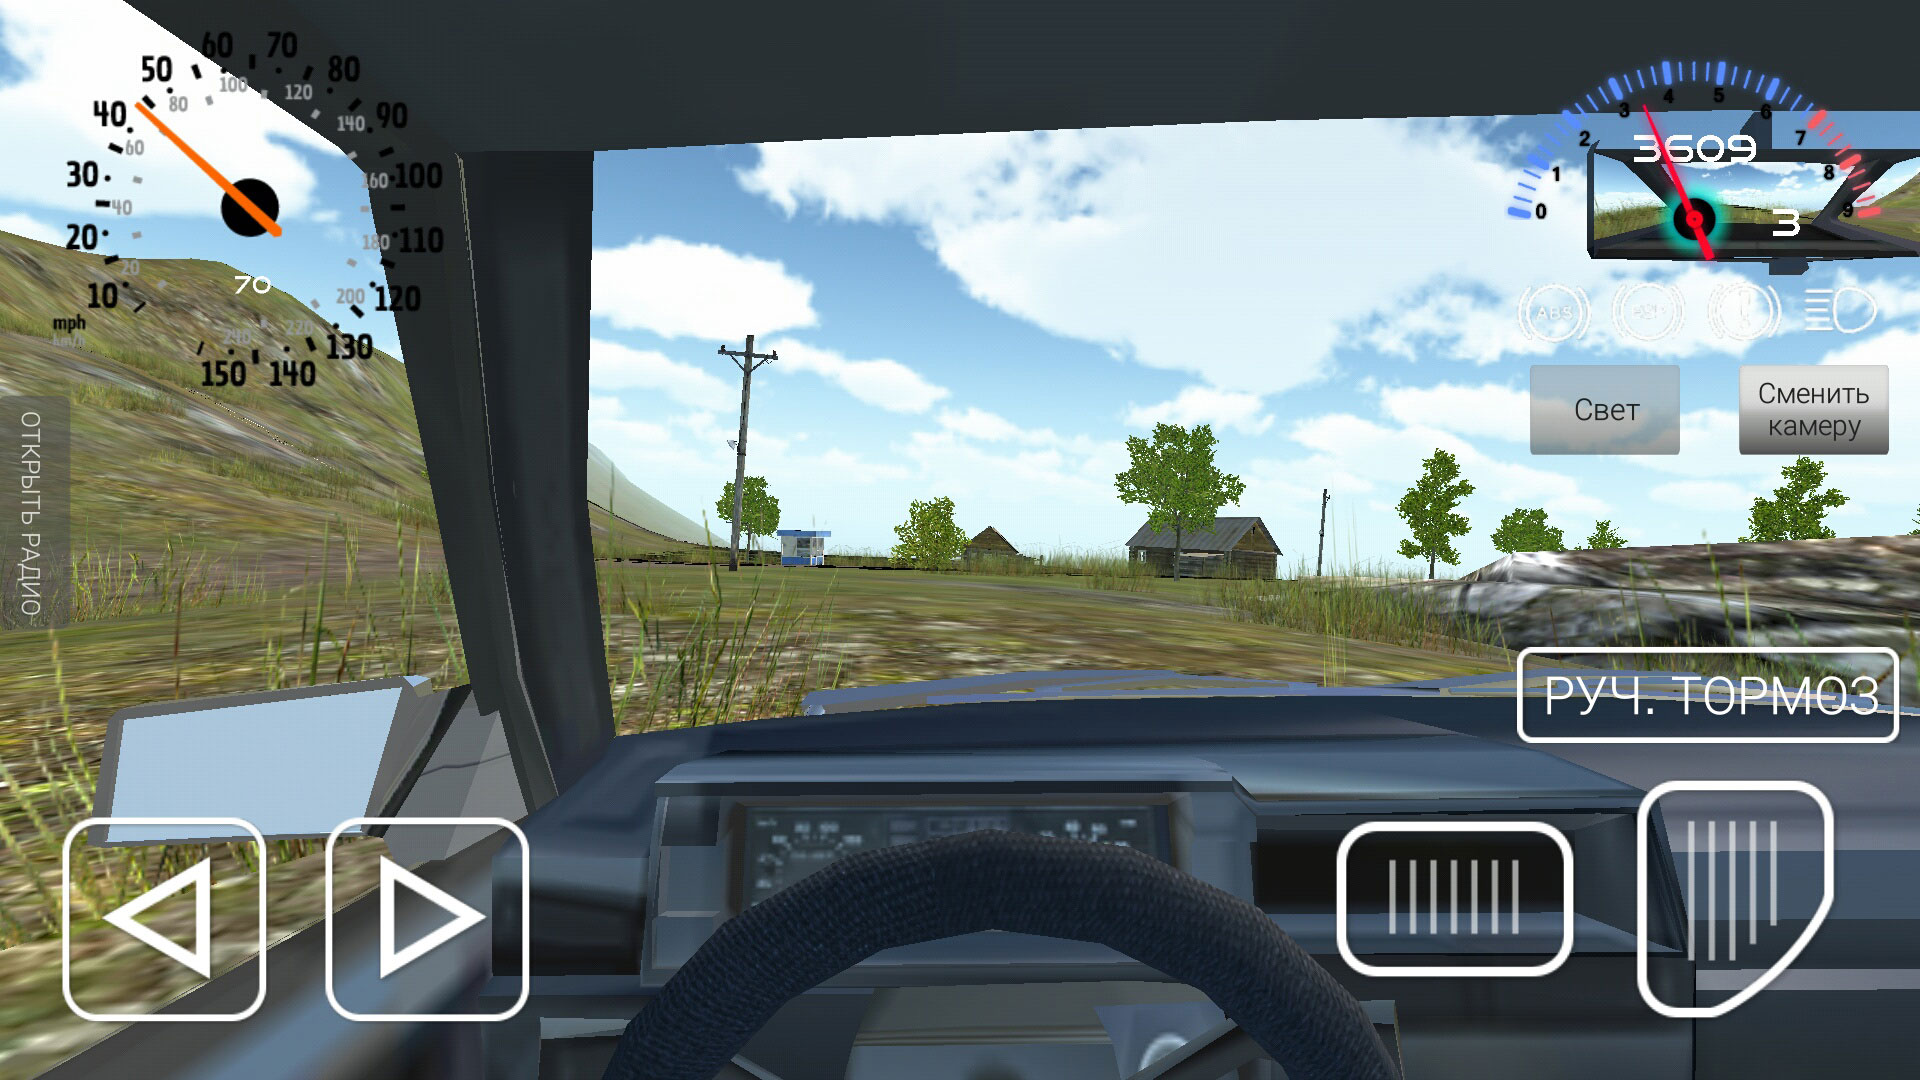 Симулятор вождения hunter. Симулятор вождения ВАЗ 2108. Игра симулятор вождения ВАЗ 2108. ВАЗ 2108 игра симулятор. Симулятор автомобиля ВАЗ 2108.